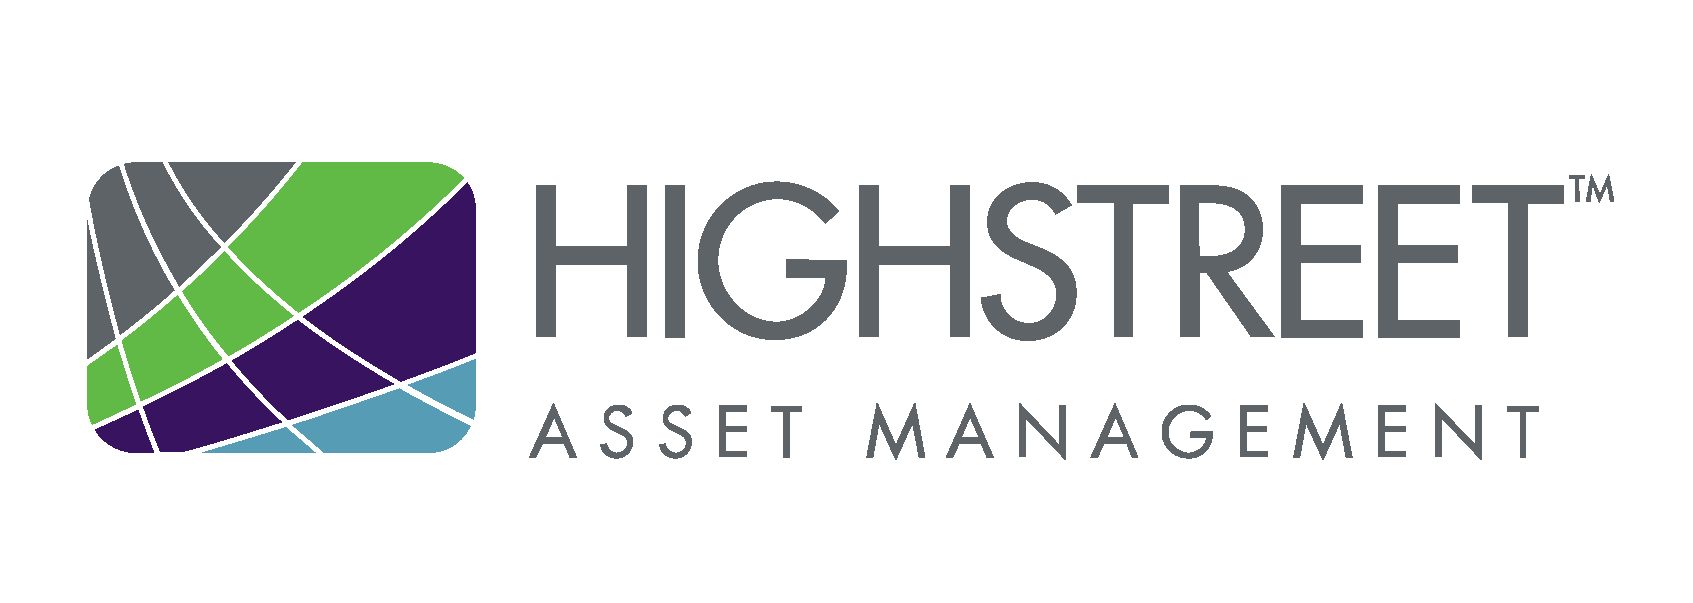 Highstreet_AM Logo_4c_pos.png